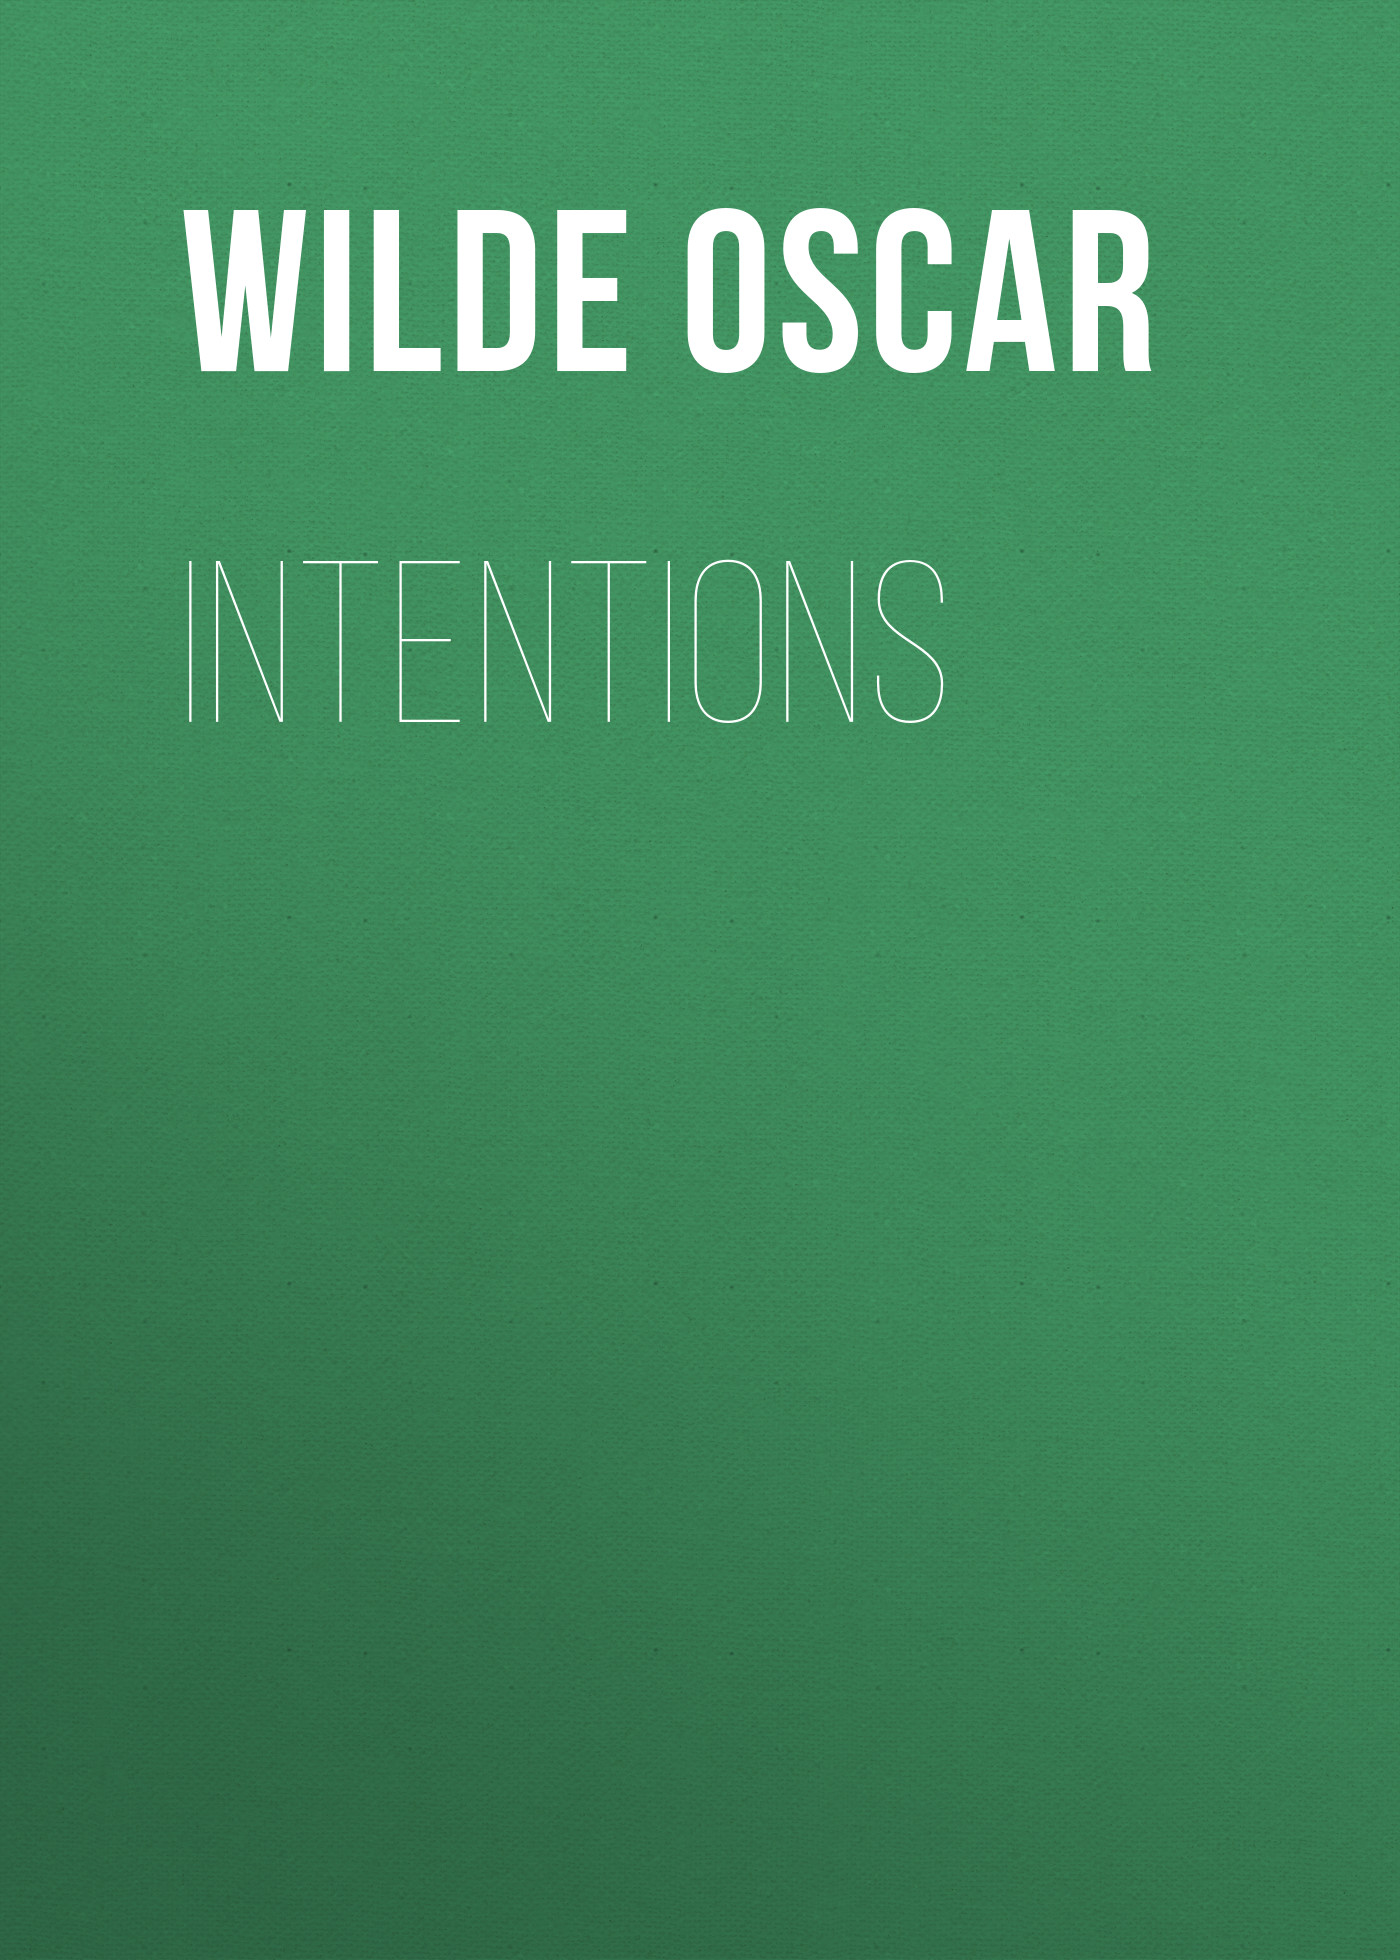 Книга Intentions из серии , созданная Oscar Wilde, может относится к жанру Литература 19 века, Зарубежная классика. Стоимость электронной книги Intentions с идентификатором 25560620 составляет 0 руб.